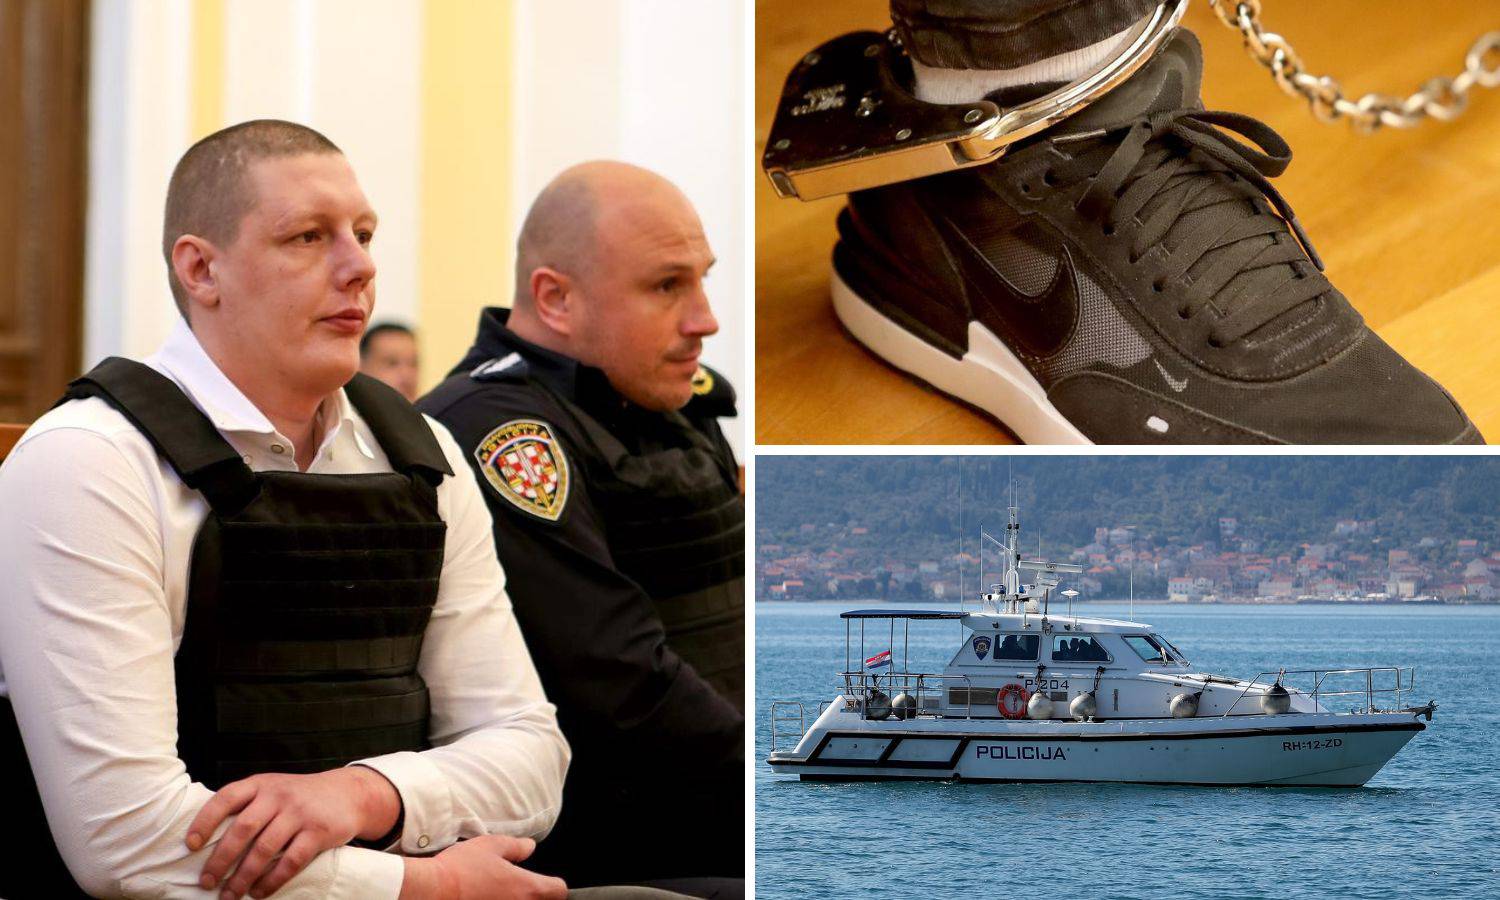 Suđenje Tanaskoviću bliži se kraju, Županijski sud u Zadru čuvaju čak i policijski brodovi